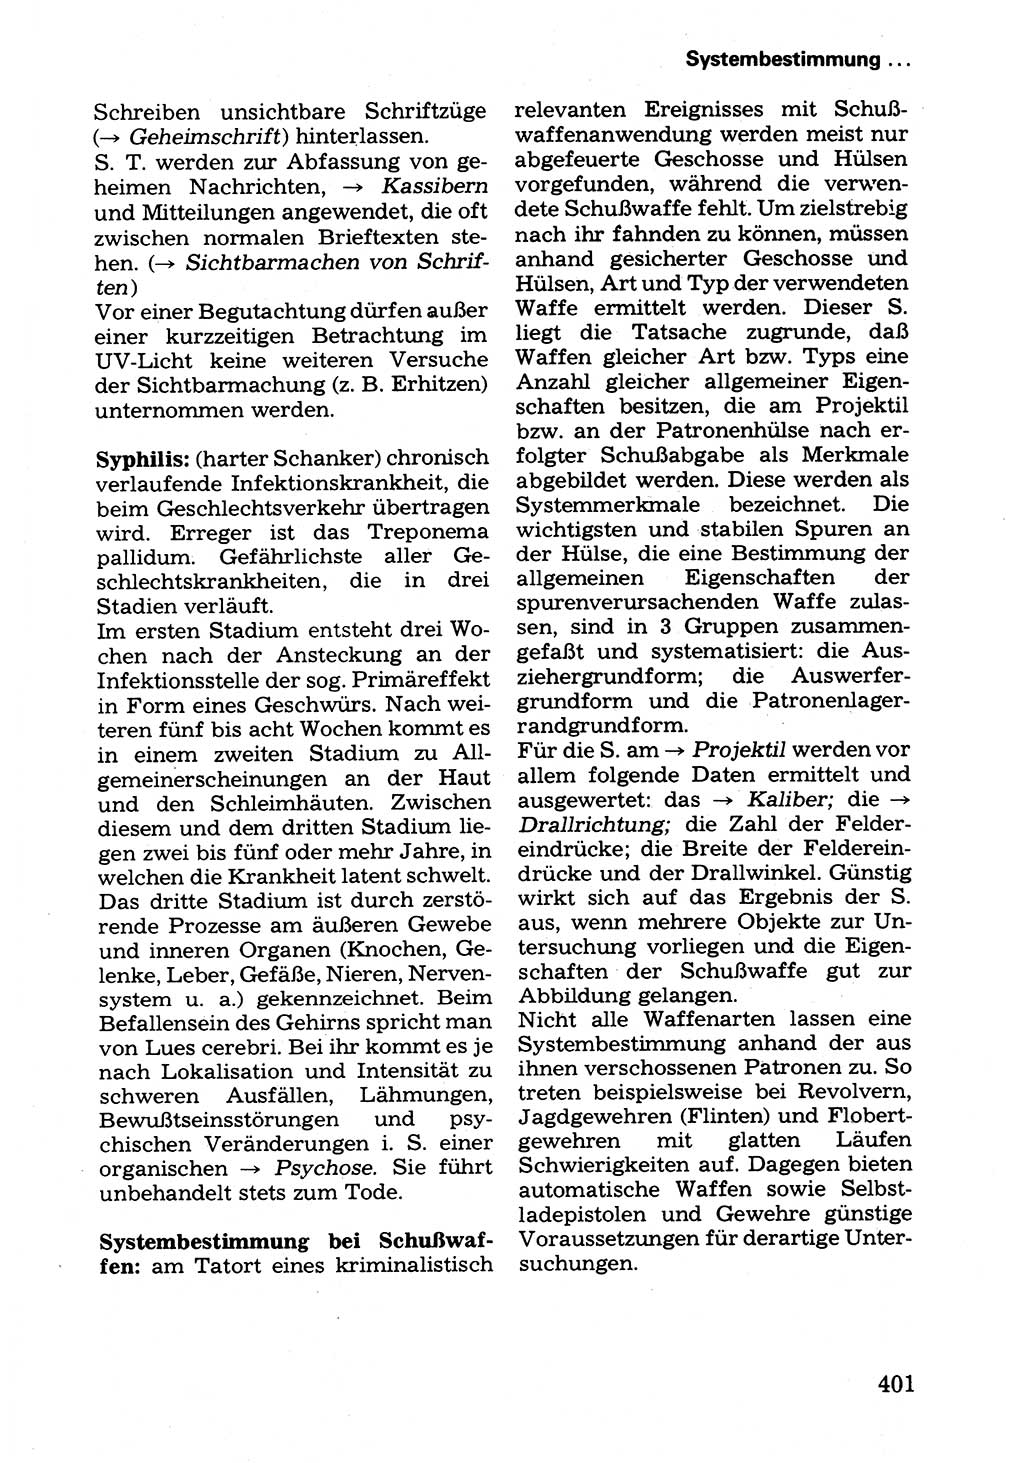 Wörterbuch der sozialistischen Kriminalistik [Deutsche Demokratische Republik (DDR)] 1981, Seite 401 (Wb. soz. Krim. DDR 1981, S. 401)